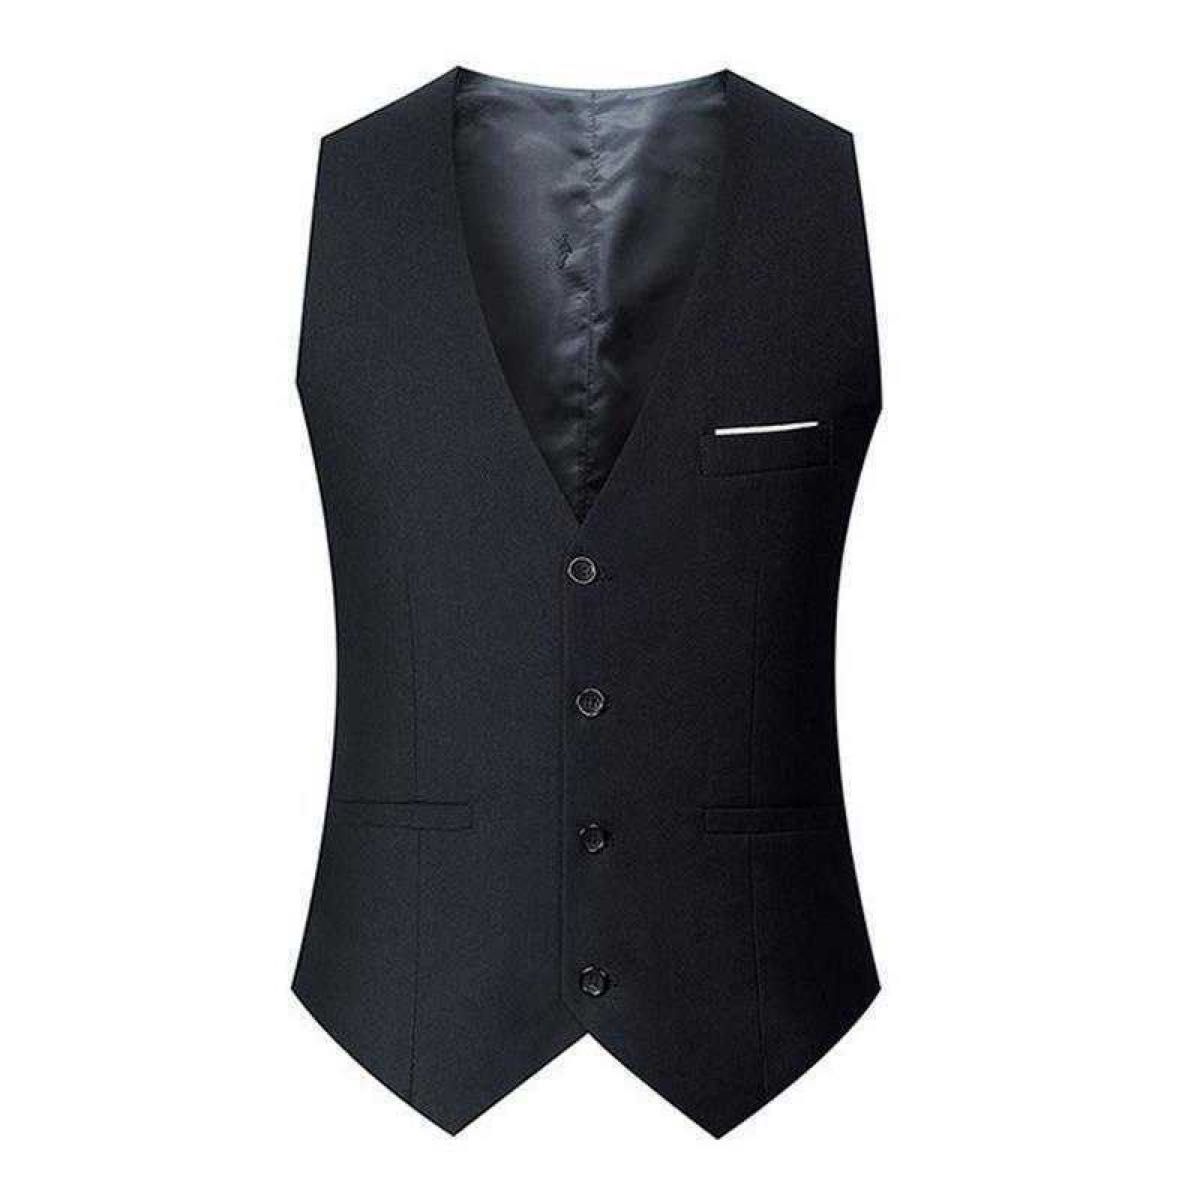 スーツ ベスト セレモニー フォーマル ビジネス 紳士 結婚式 グレー XL